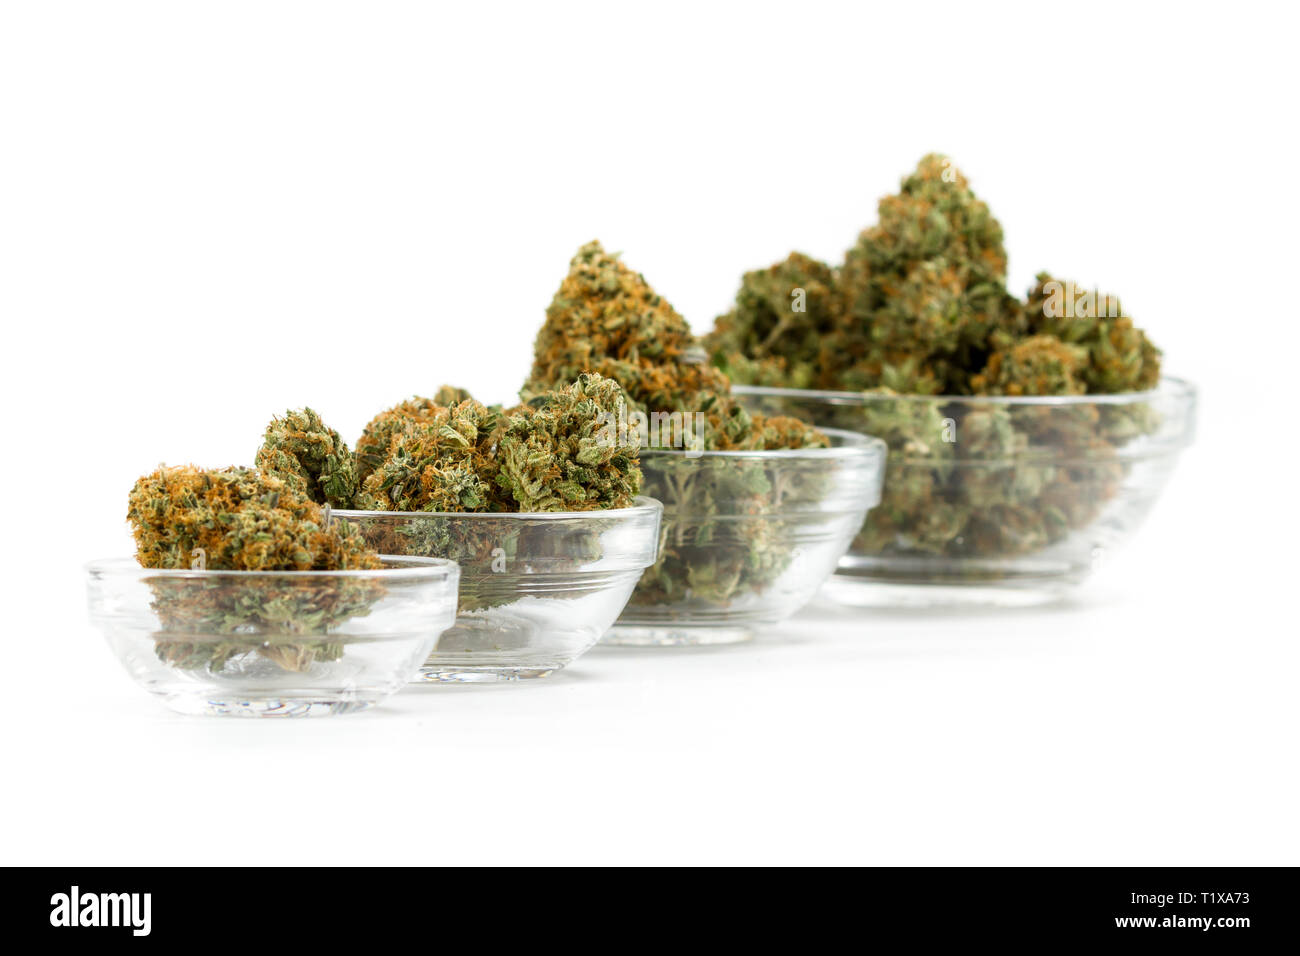 Stapelbare Behälter aus Glas mit Cannabis Knospen auf weißem Hintergrund gefüllt Stockfoto